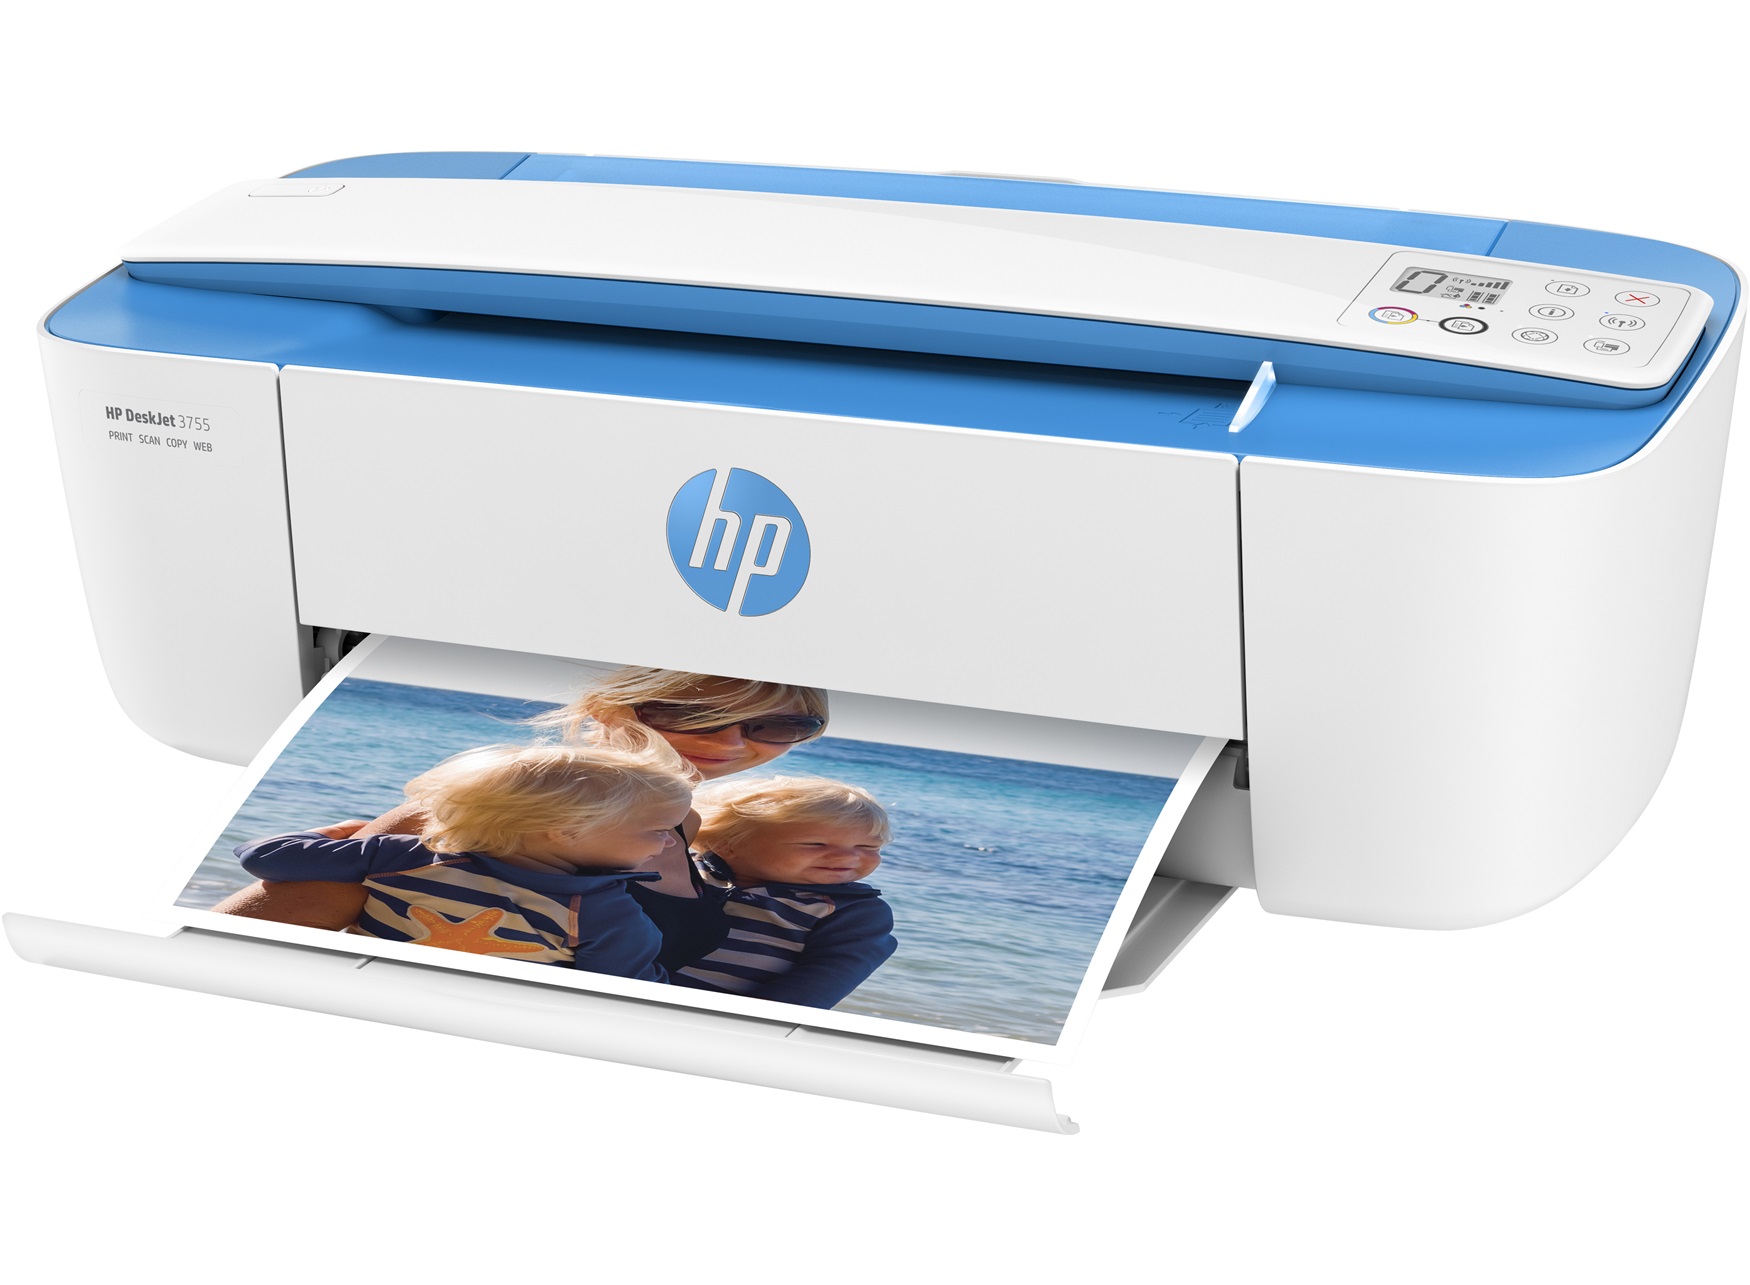 Máy in HP DeskJet 3755 All-in-One